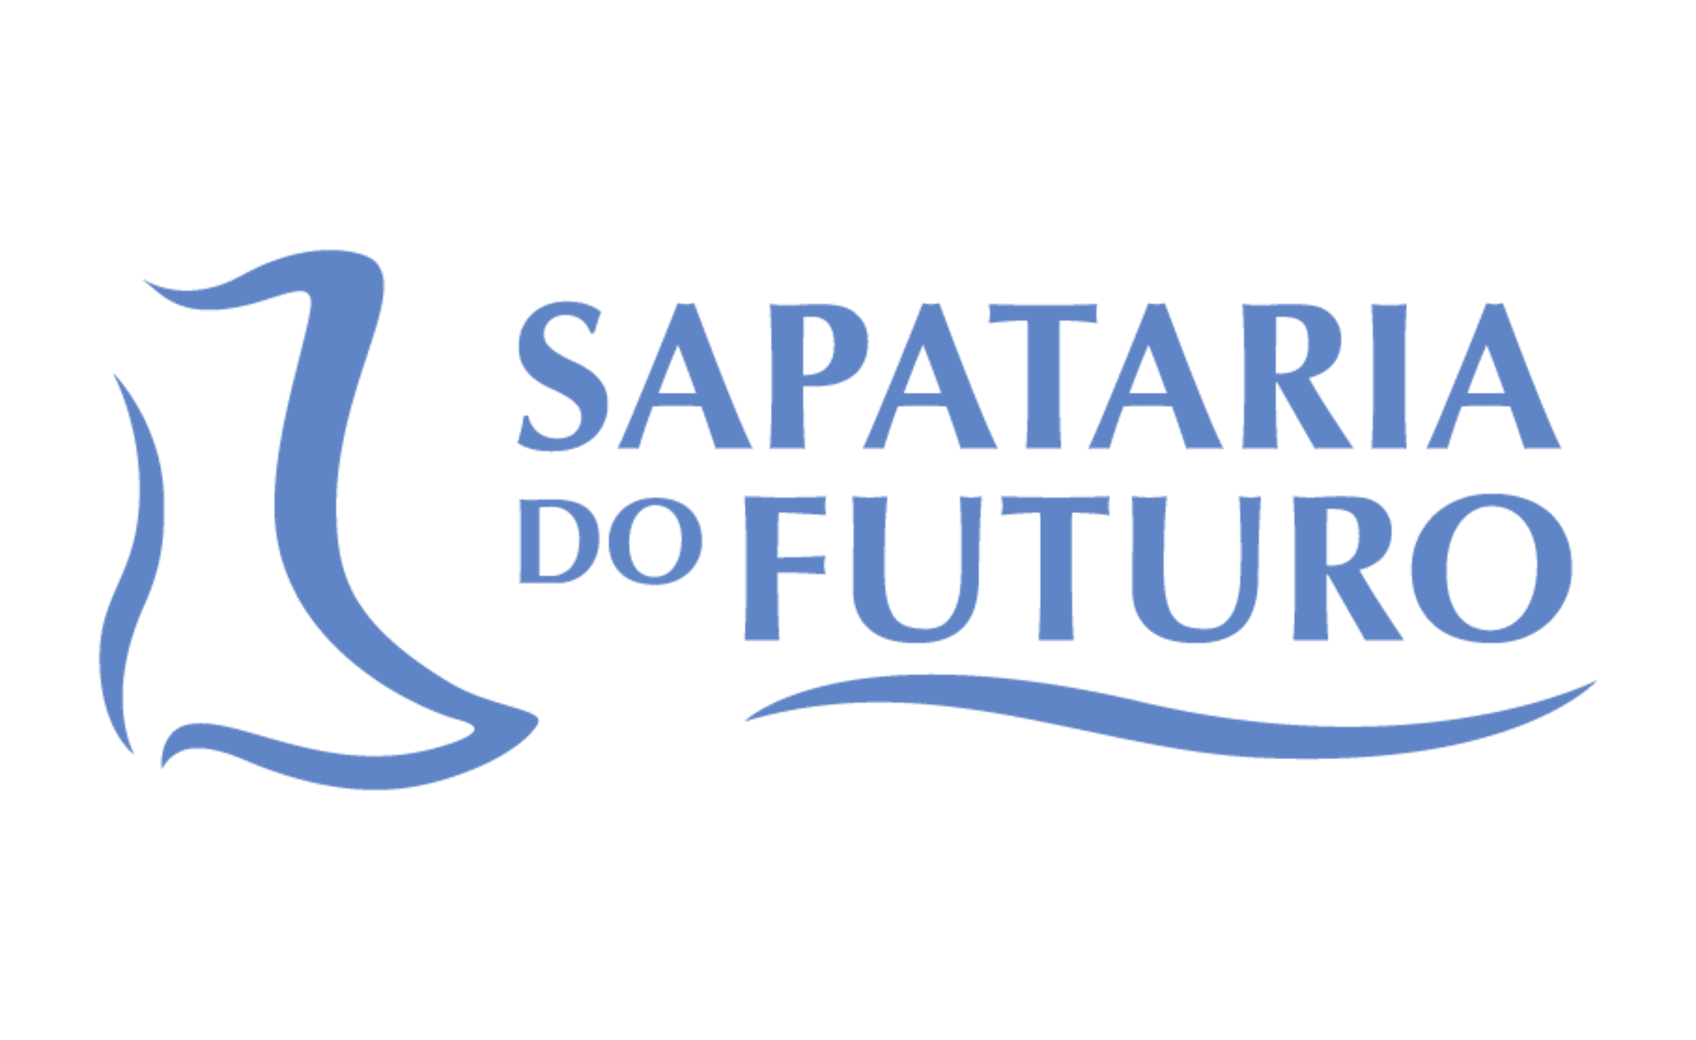 Serviços do Futuro - Shopping Bosque Grão-Pará